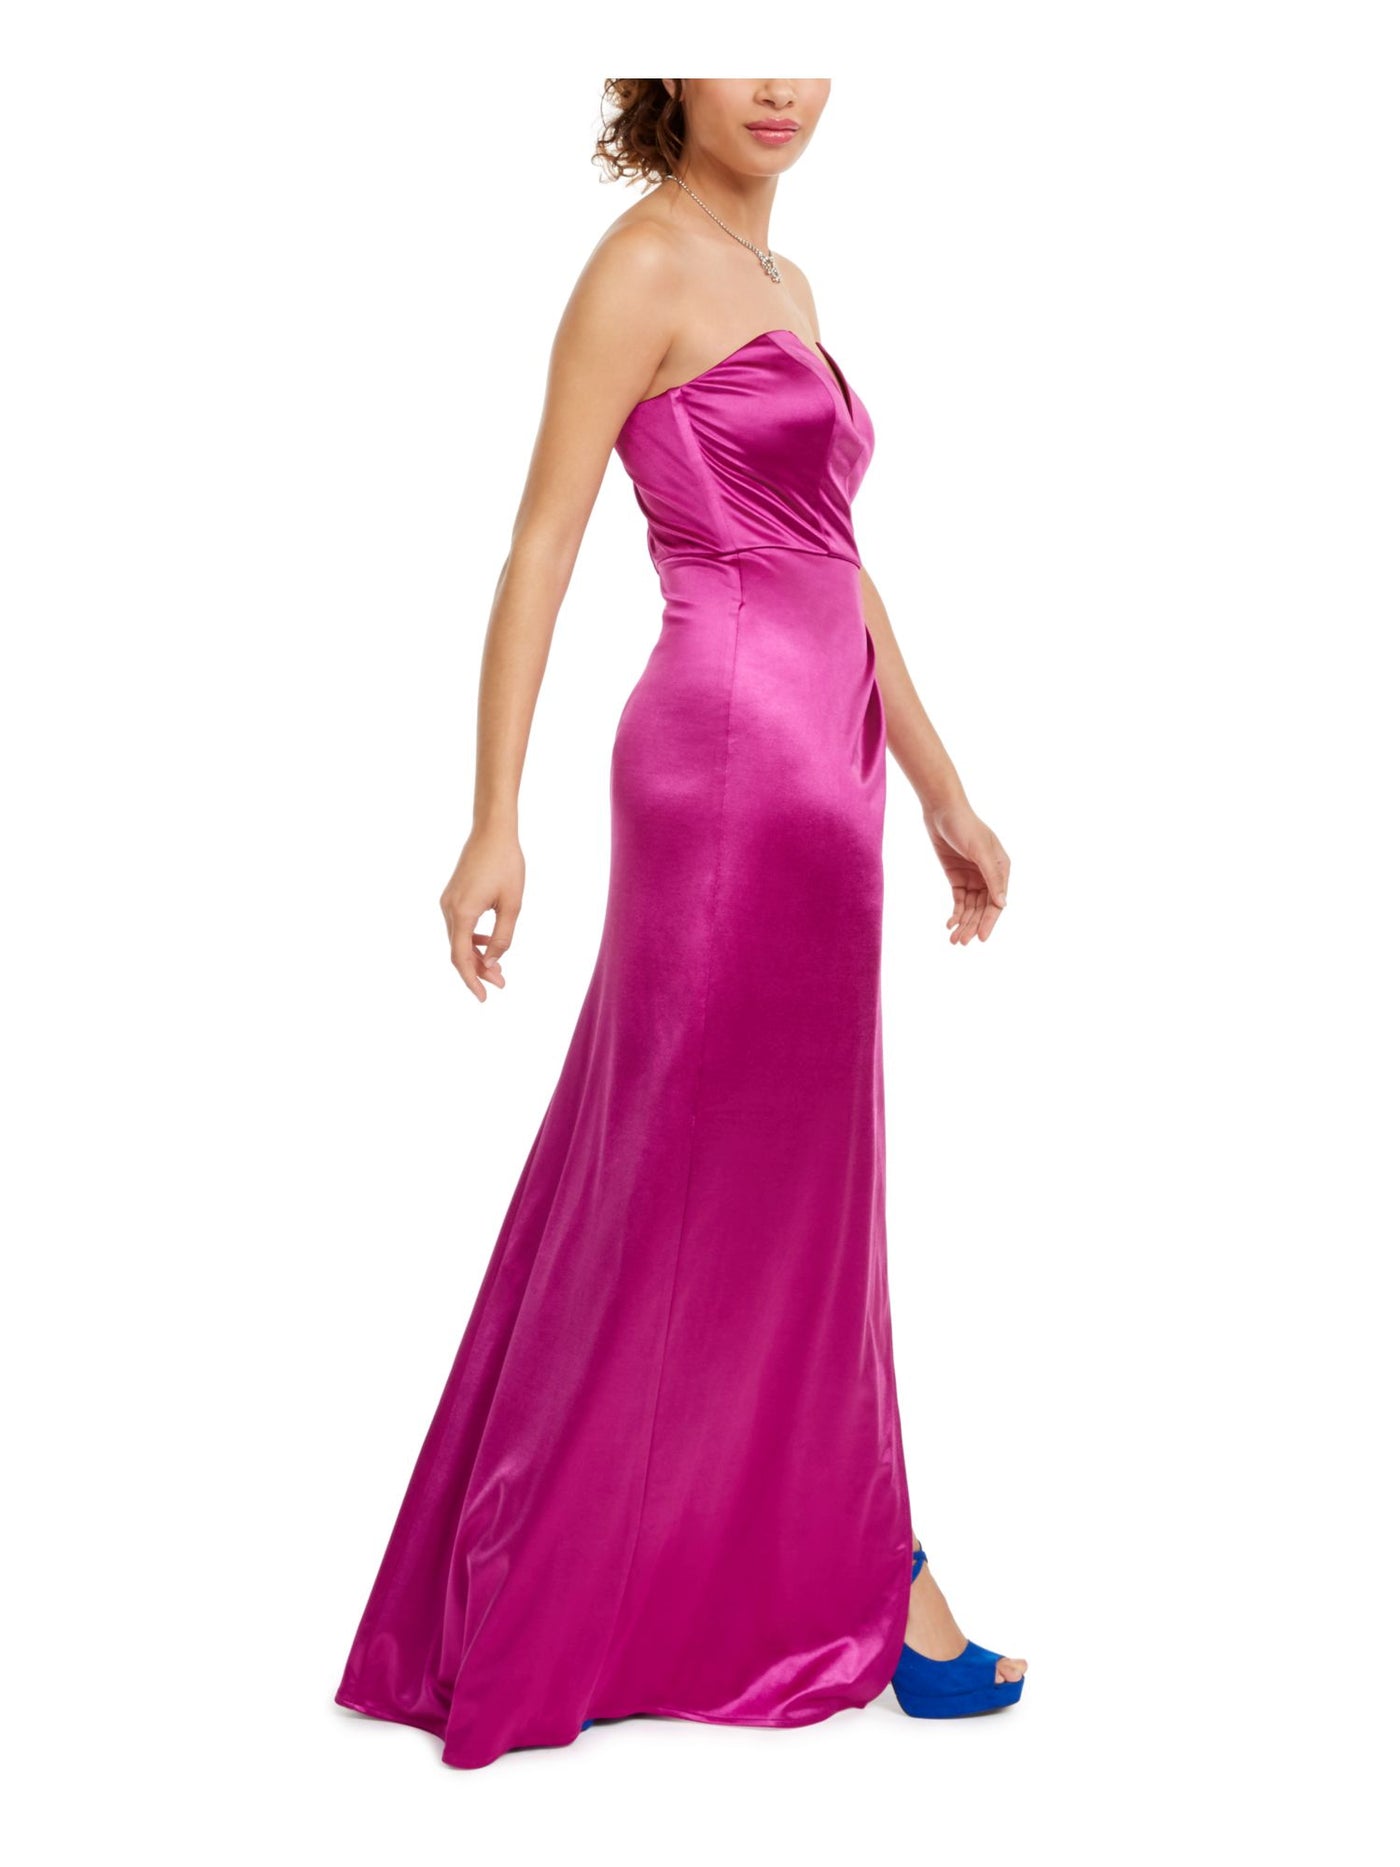 CITY STUDIO Womens Slit Sleeveless Sweetheart Neckline Full-Length Prom Fit + Flare Dress